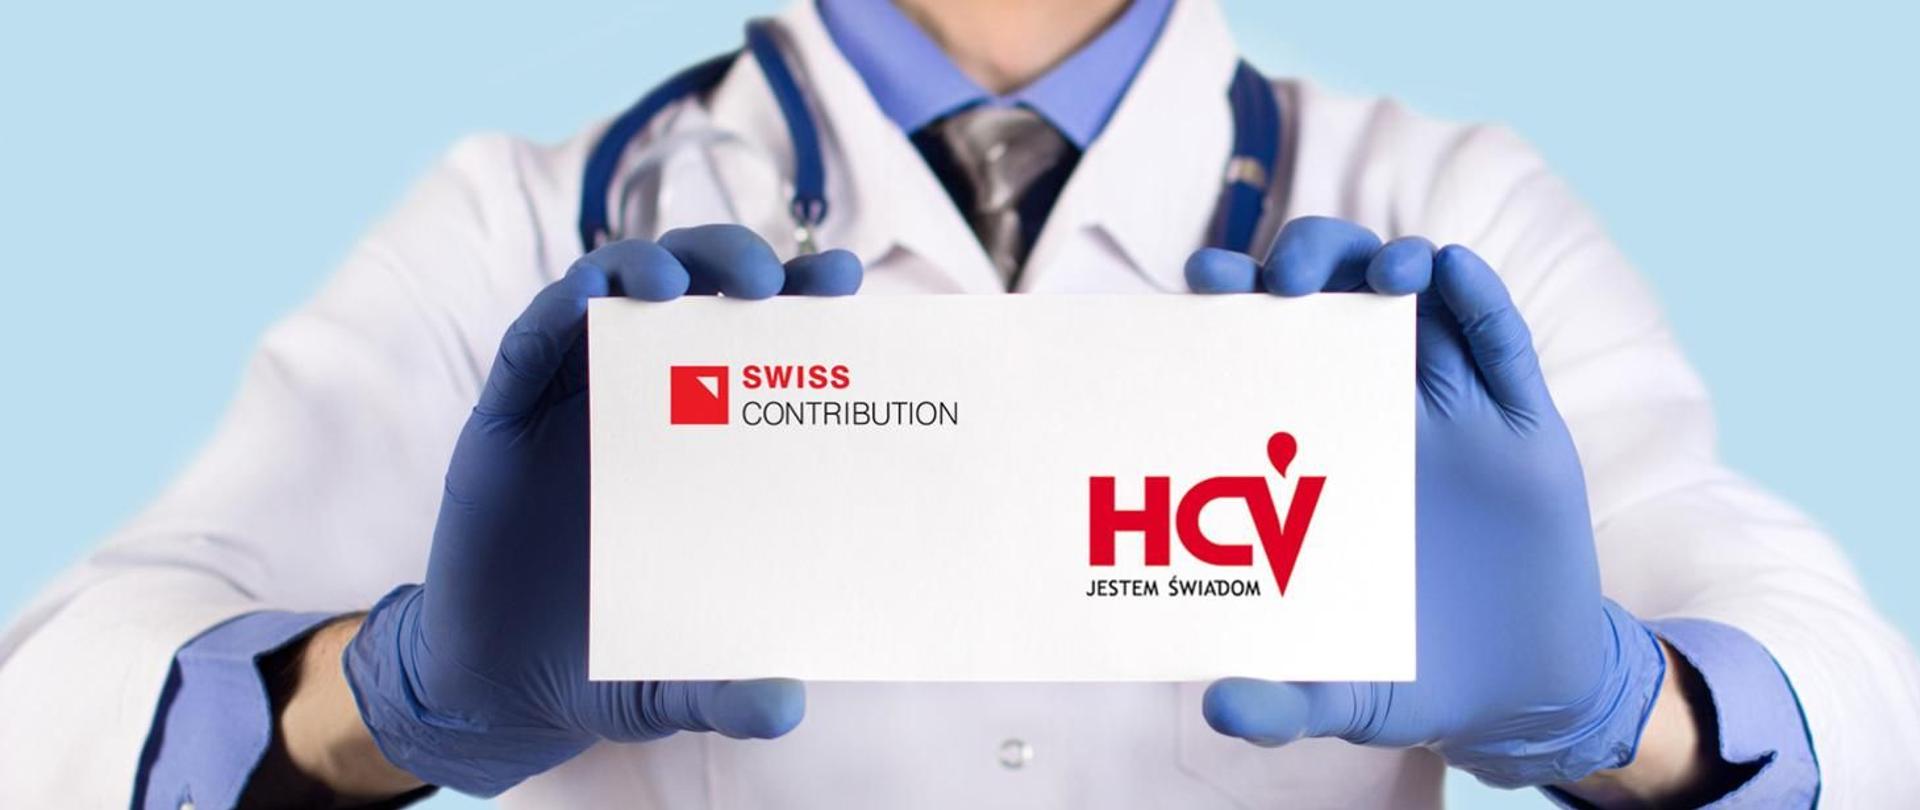 Grafika przedstawia zdjęcie lekarza trzymającego kartkę z napisem Swiss Contribution, HCV jestem świadom 